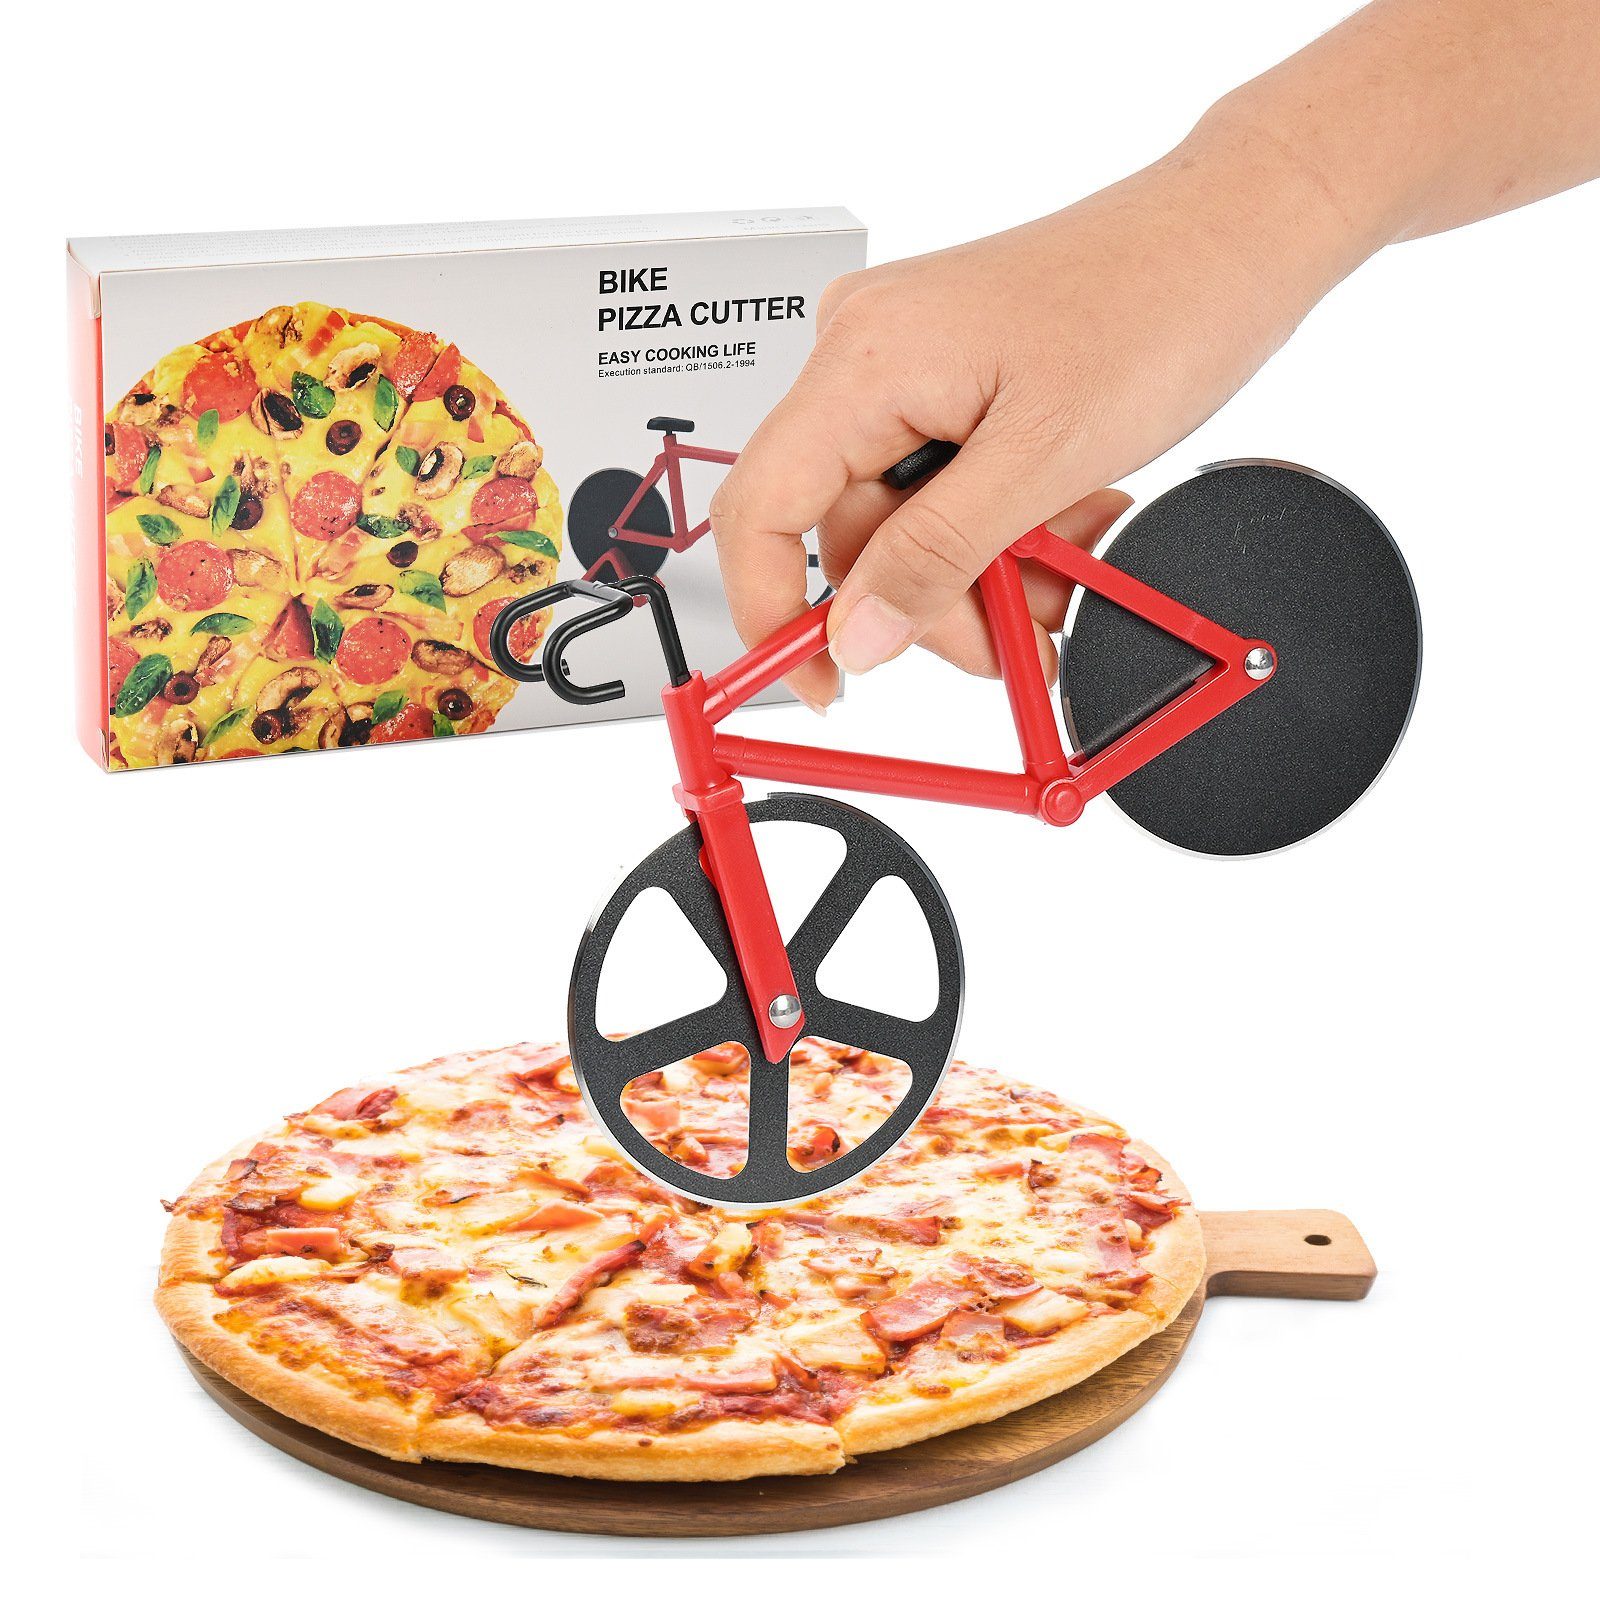 Atäsi Pizzaschneider Fahrrad Pizzaschneider,Antihaftbeschichteter Edelstahl Pizza Schneider